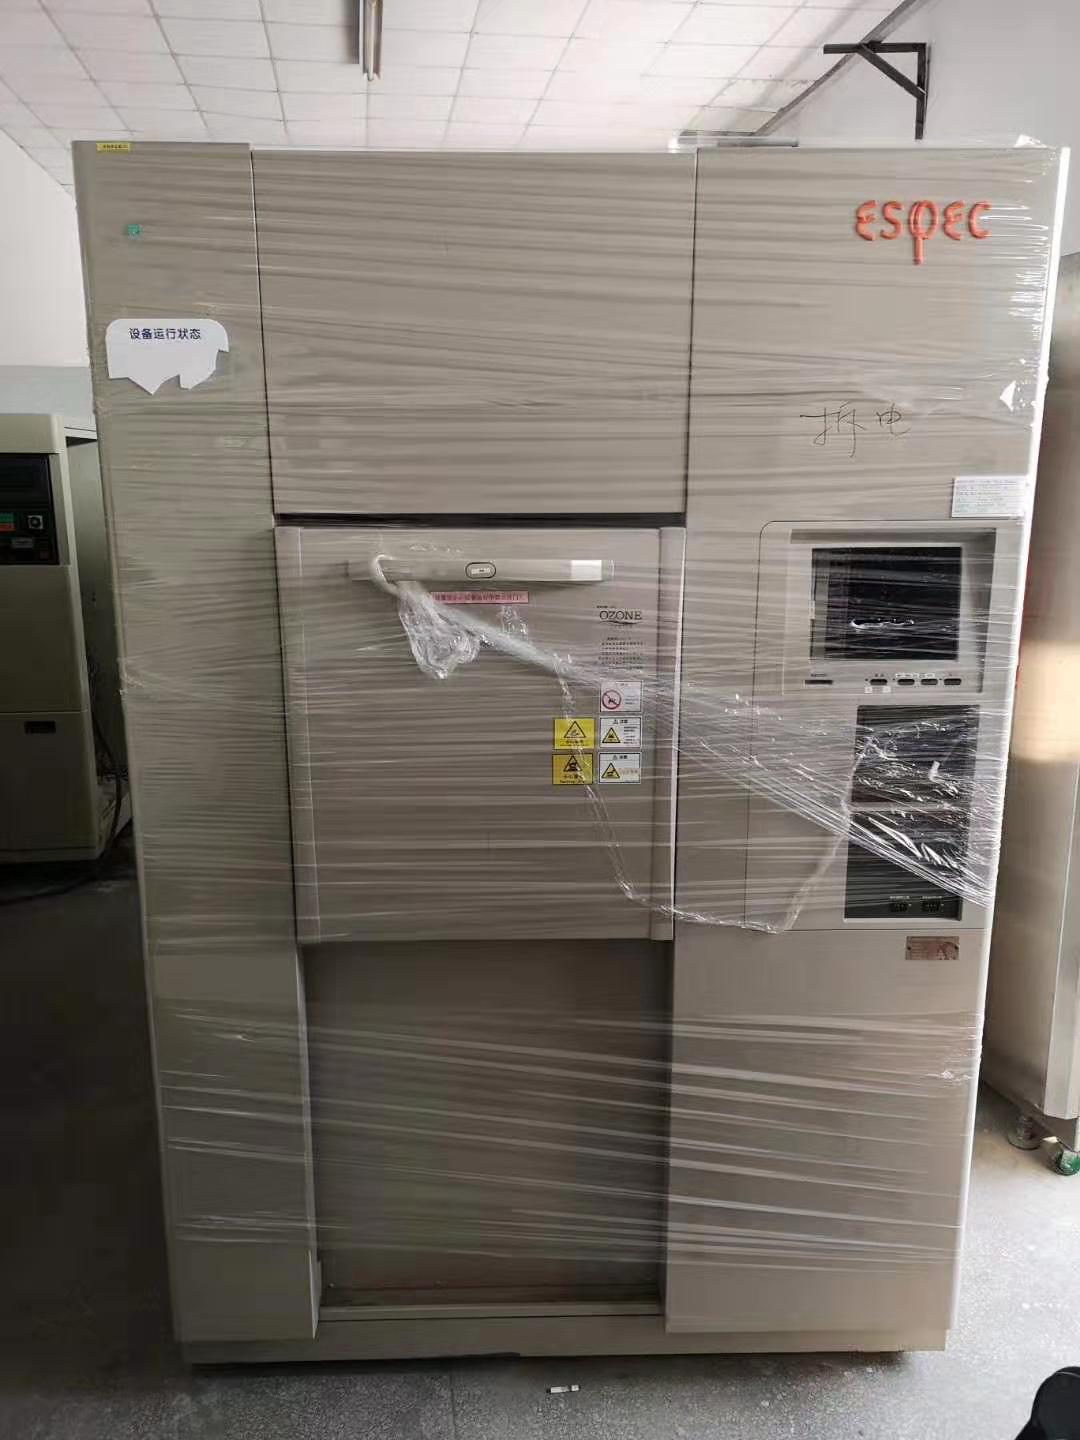 杭州回收环测二手冷热冲击试验箱品牌 东莞市广林仪器设备有限公司